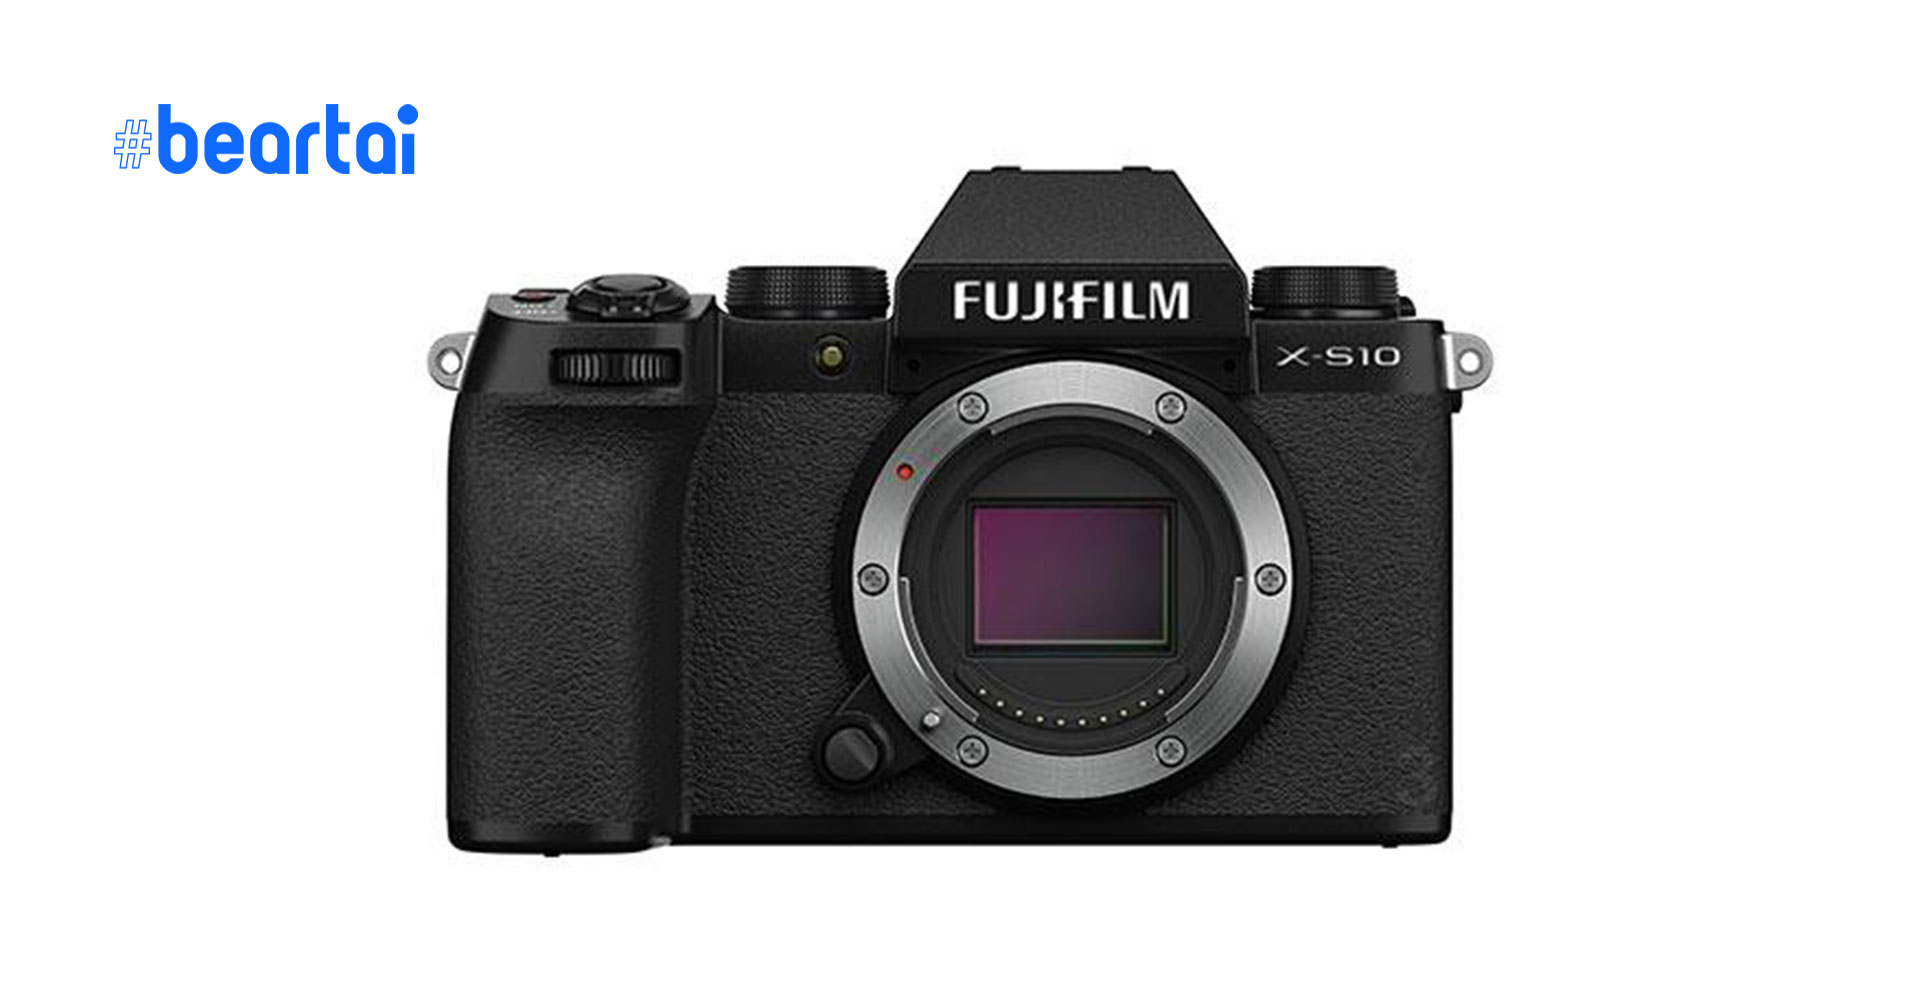 หลุดภาพกล้องมิเรอร์เลสตัวใหม่ Fujifilm X-S10 ก่อนวันเปิดตัว